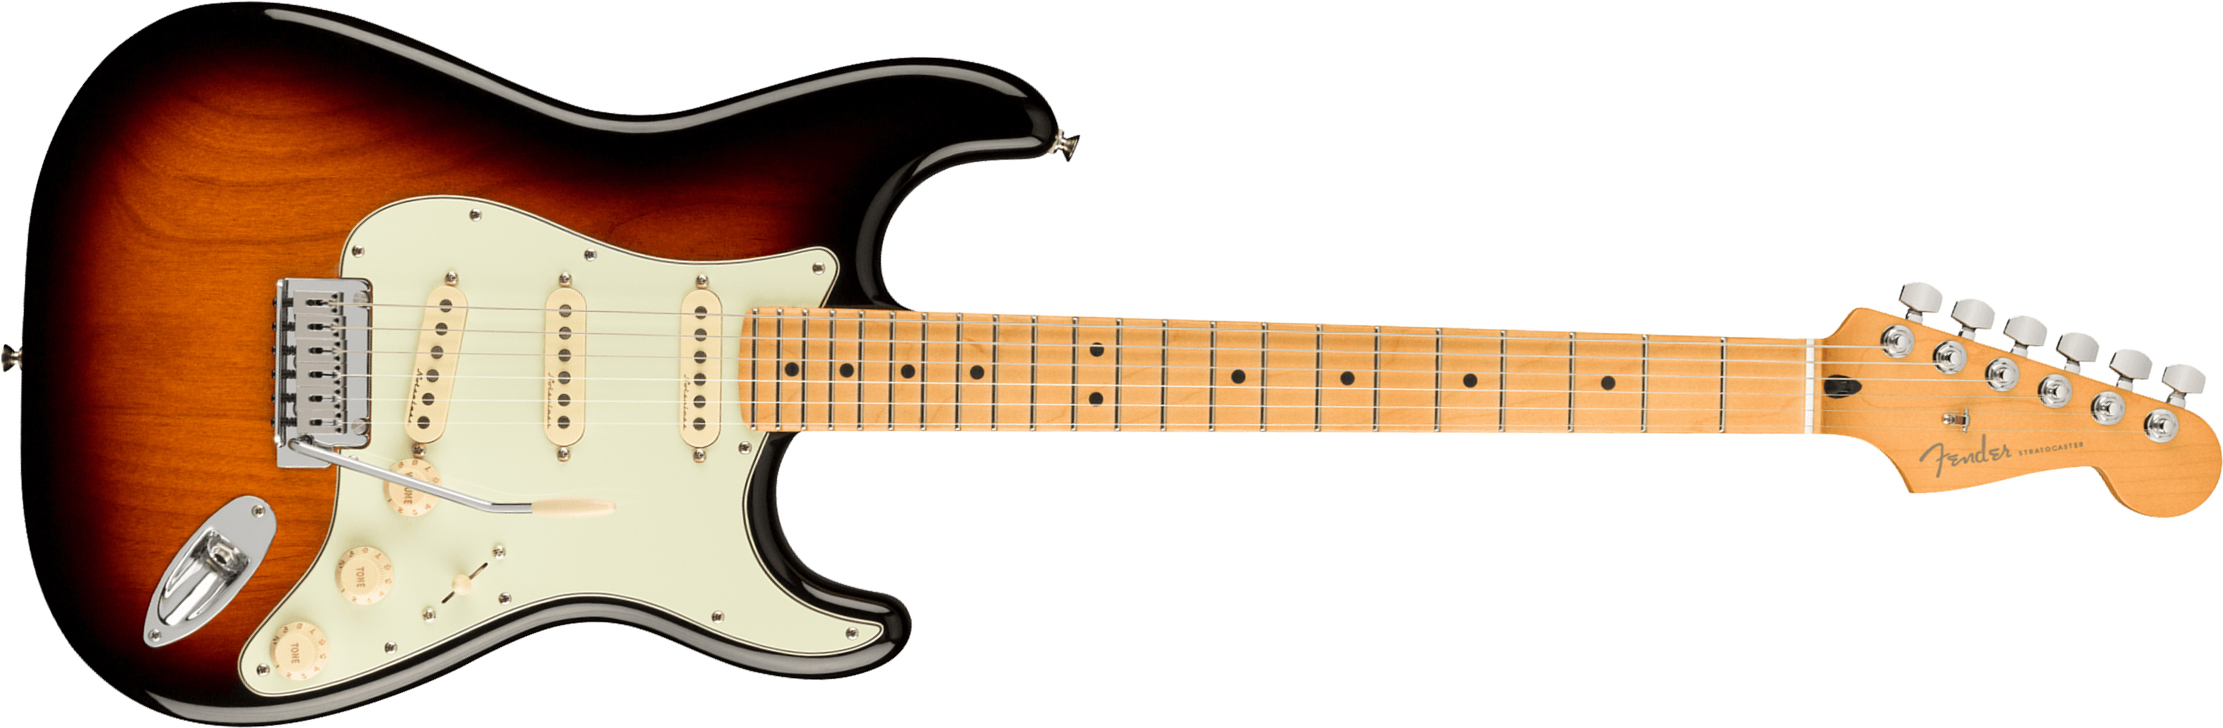 Fender Strat Player Plus Mex 3s Trem Mn - 3-color Sunburst - Guitare Électrique Forme Str - Main picture